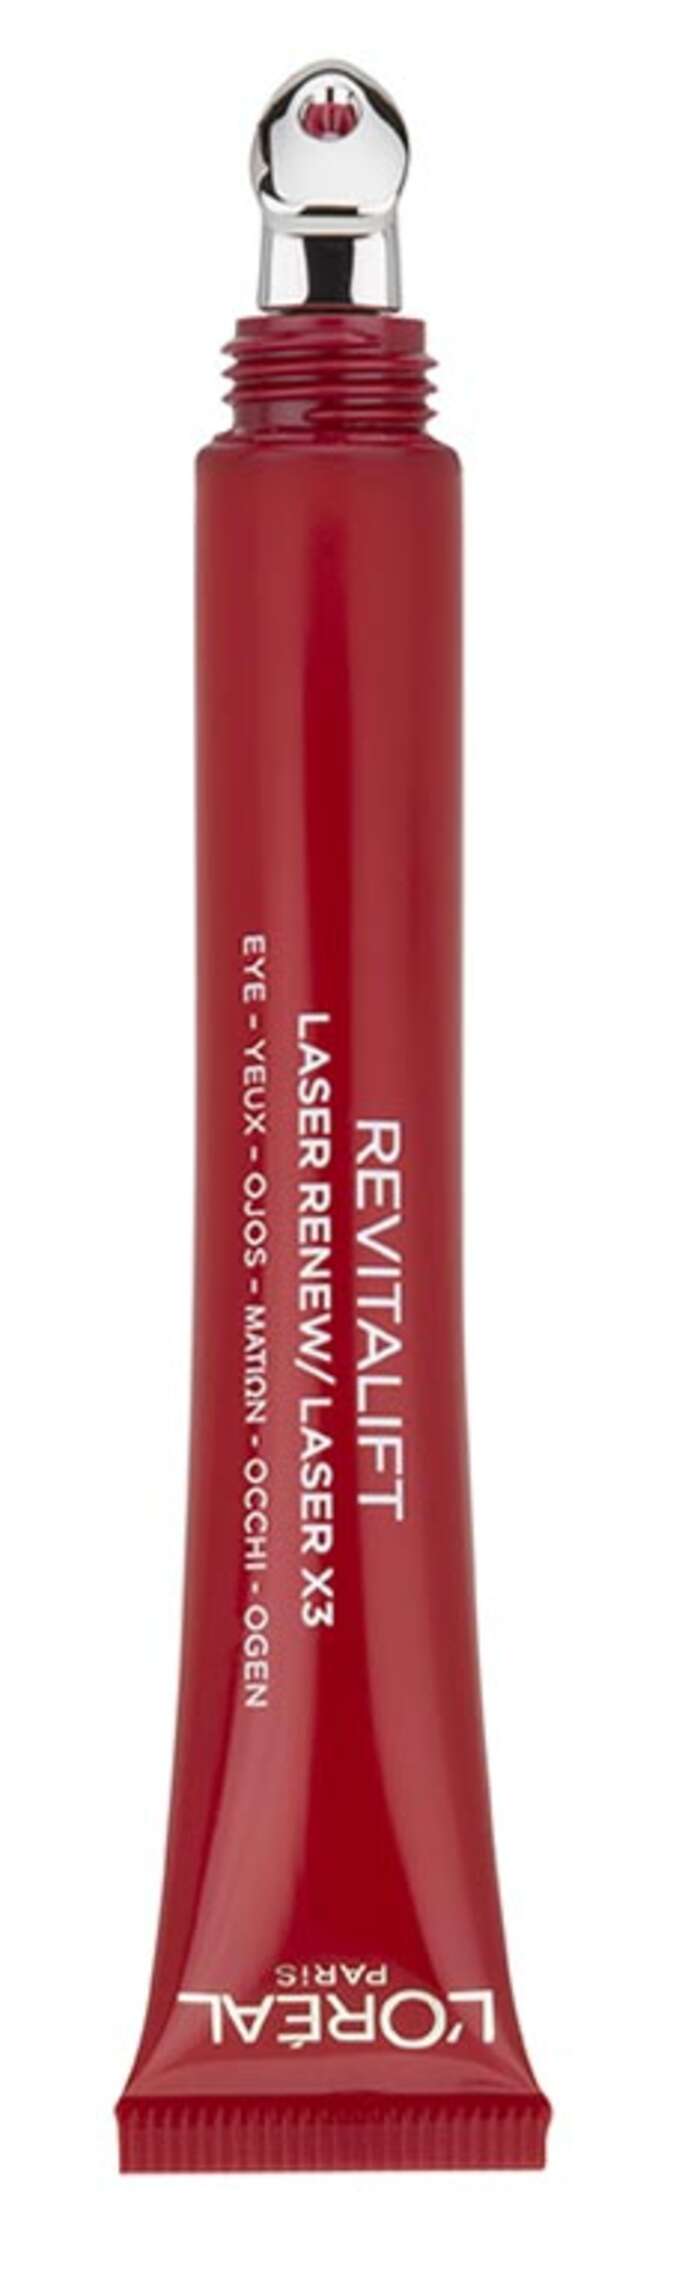 L'Oréal Revitalift Laser Eye Cream 2